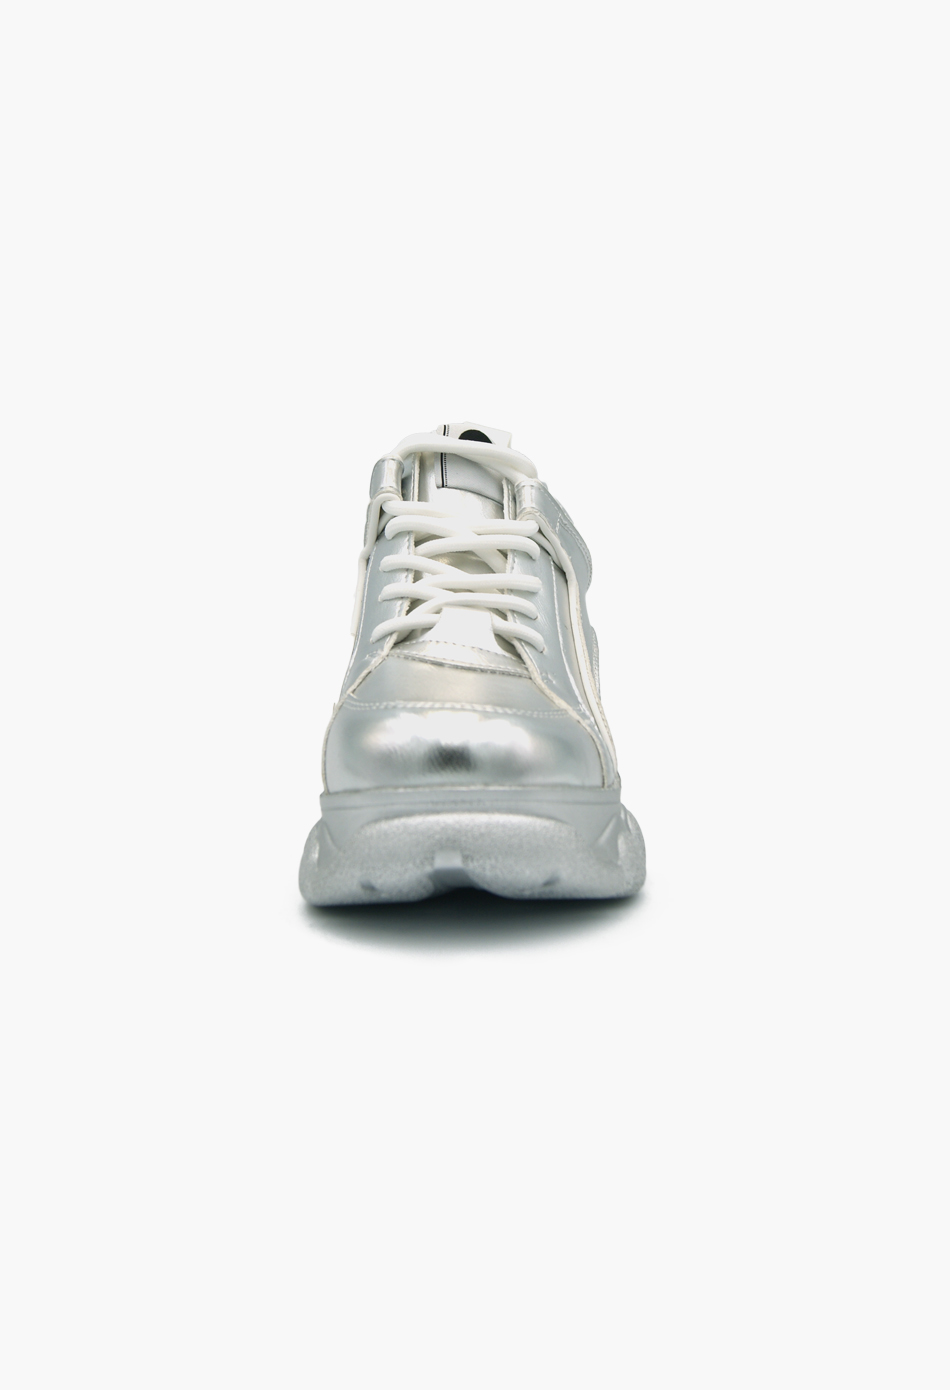 Γυναικεία Chunky Sneakers Wedges Ασημί / H9006-silver ΑΘΛΗΤΙΚΑ με ΠΛΑΤΦΟΡΜΑ joya.gr